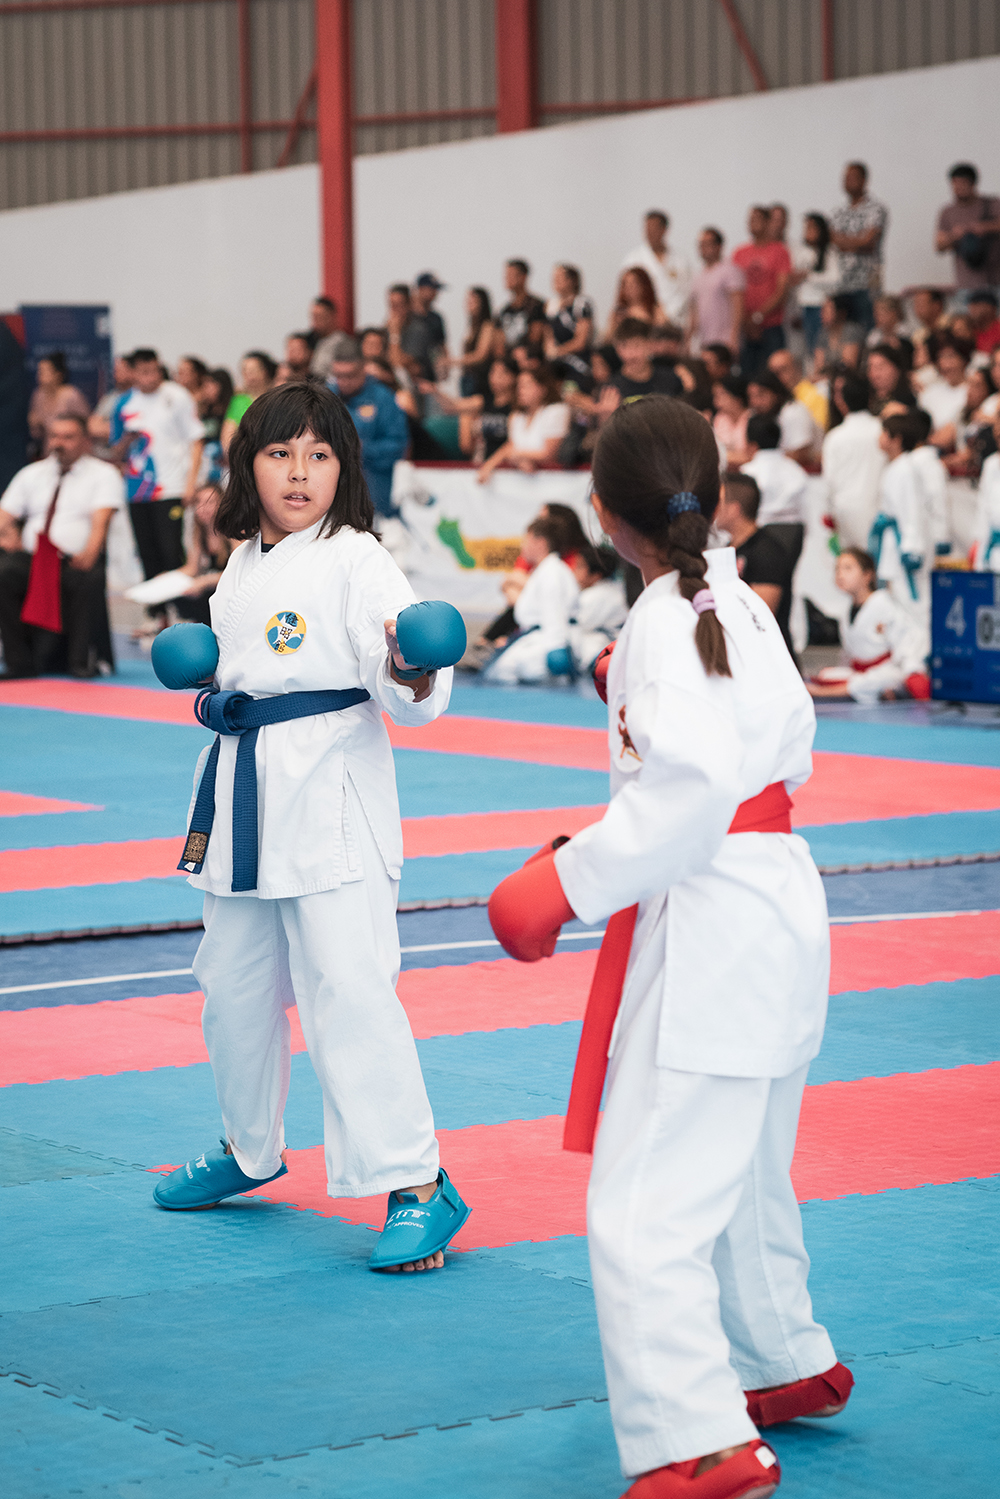 Torneo de Karate en Colina